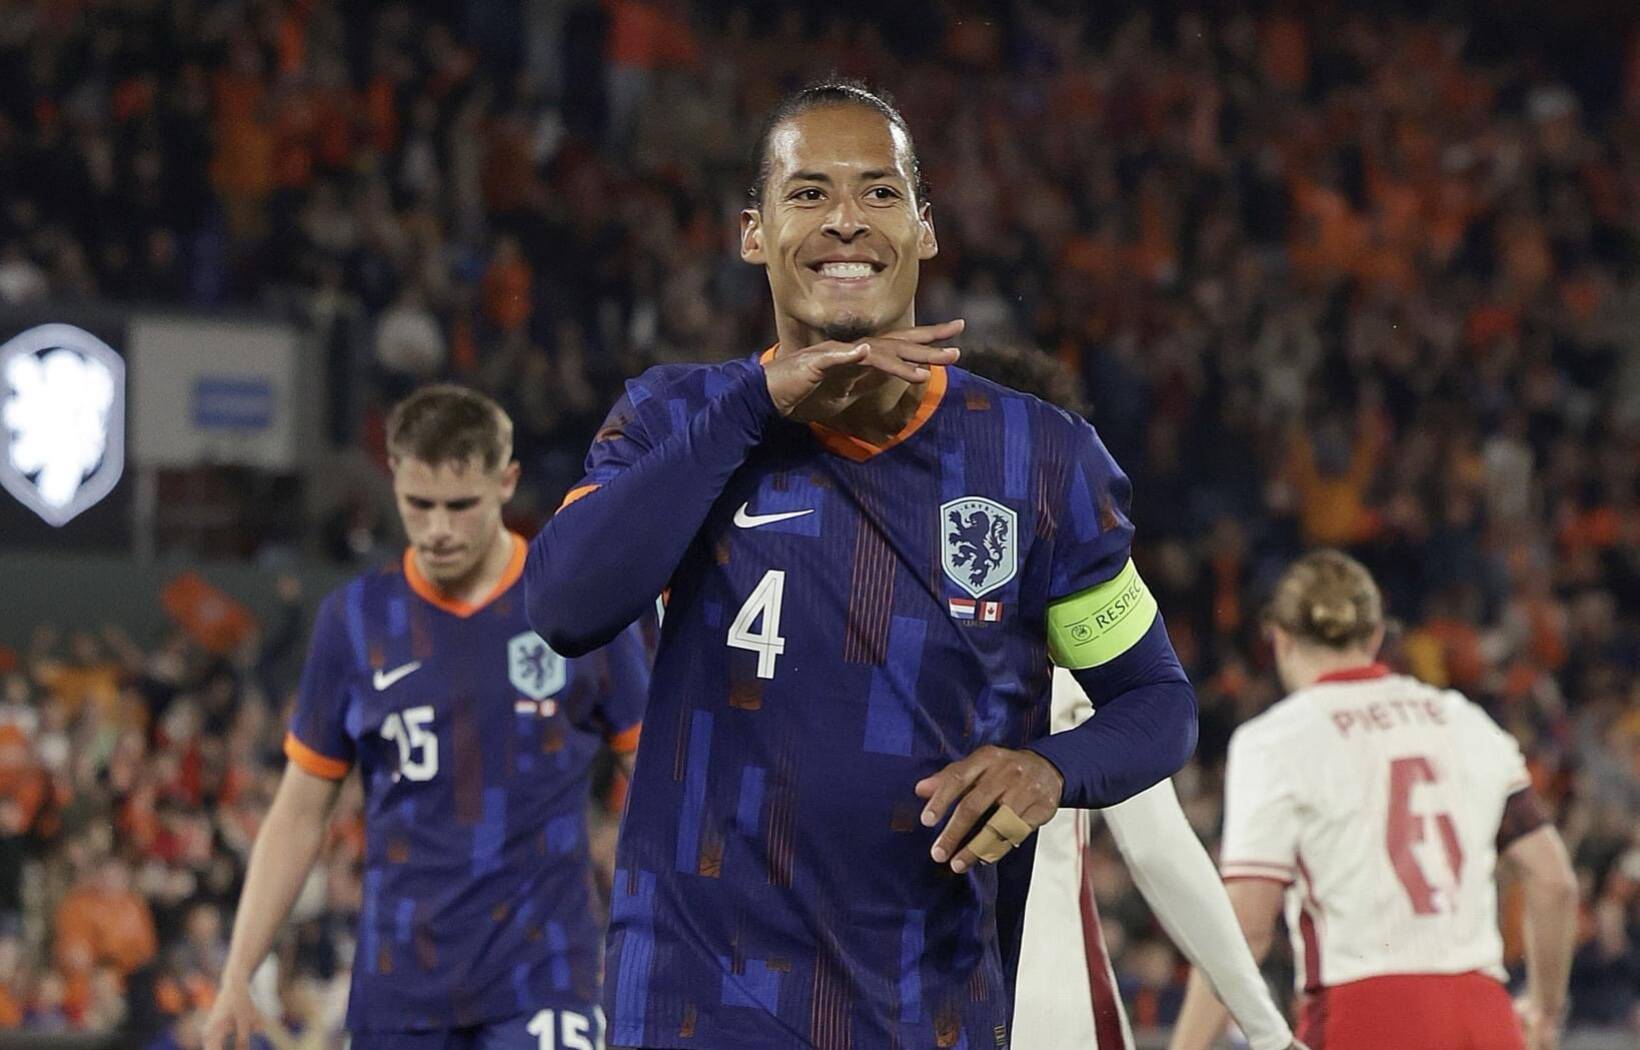 Mặc dù đã 32 tuổi nhưng World Cup 2022 là giải đấu lớn đầu tiên của cầu thủ người Hà Lan và anh đã cùng đội bóng của mình lọt vào tứ kết, nơi họ bị loại dưới tay nhà vô địch cuối cùng của Messi là Argentina. Với việc Pháp đang chờ đợi ở vòng bảng, hàng thủ Hà Lan có thể sẽ phải bận rộn và Van Djik sẽ phải đứng đầu trong trận đấu nếu Oranje muốn tiếp tục đi tiếp.  